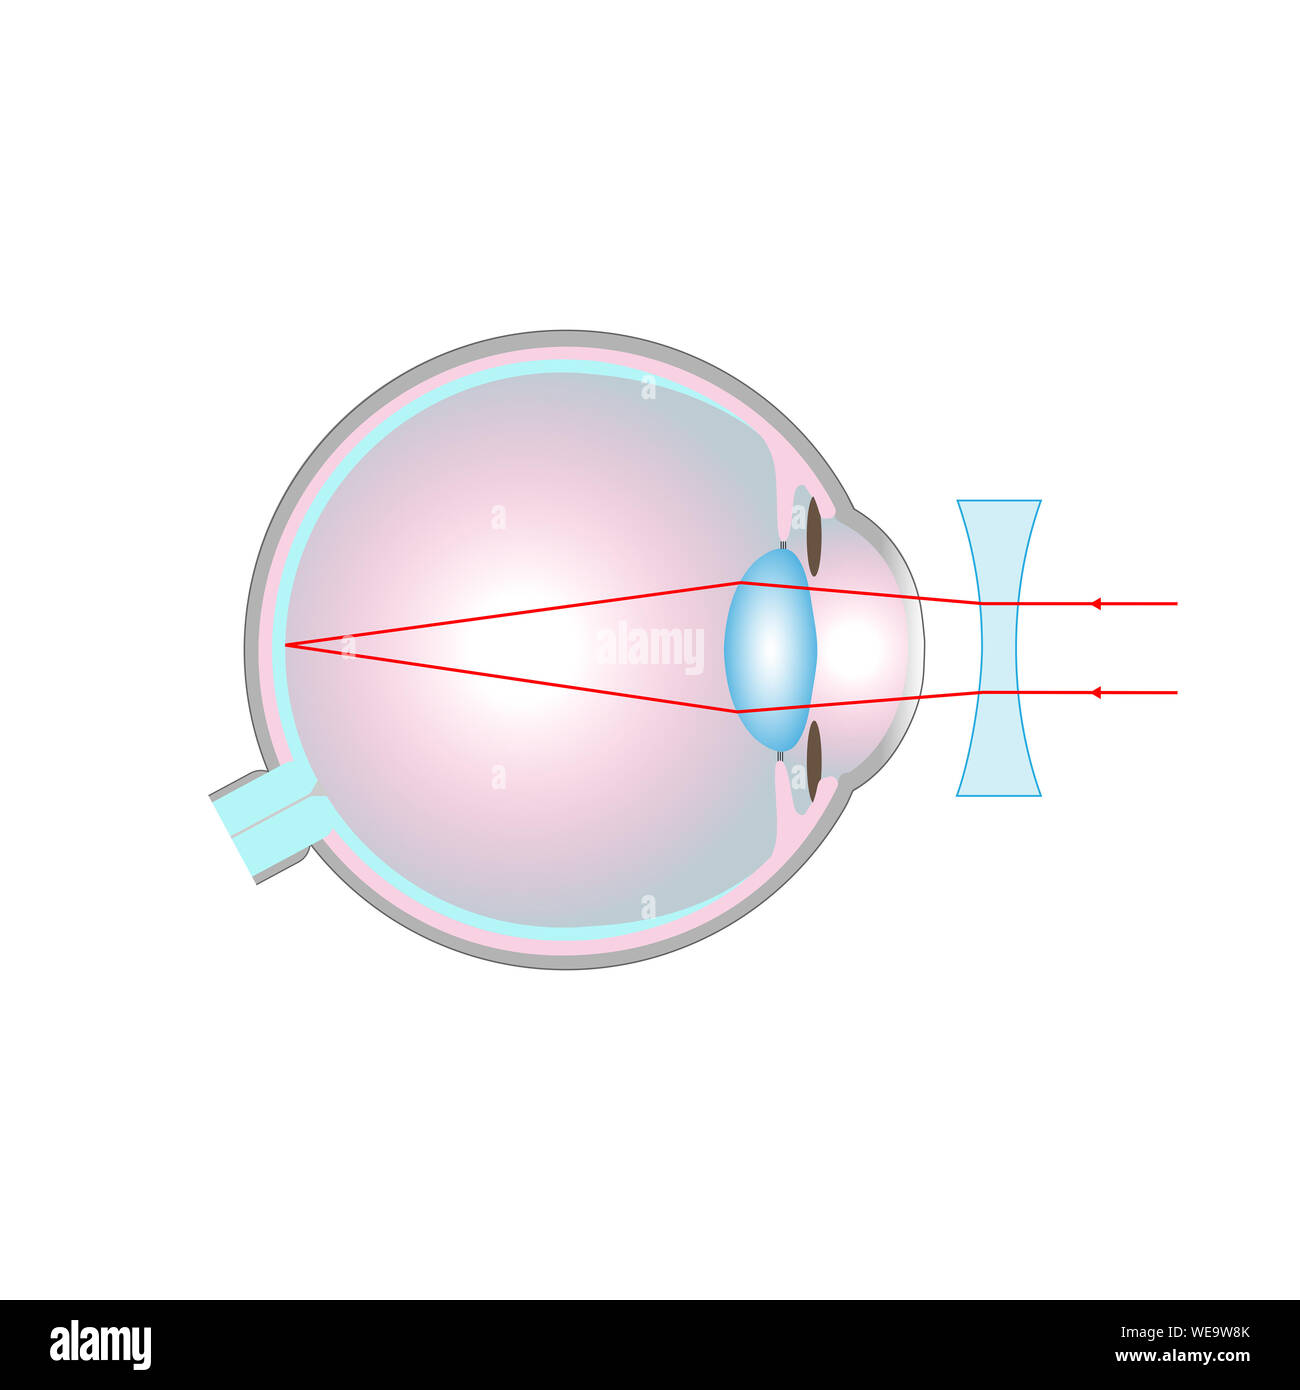 Trastorno de la visión, la ilustración. Visión corta (miopía) corregida con una lente cóncava. Foto de stock